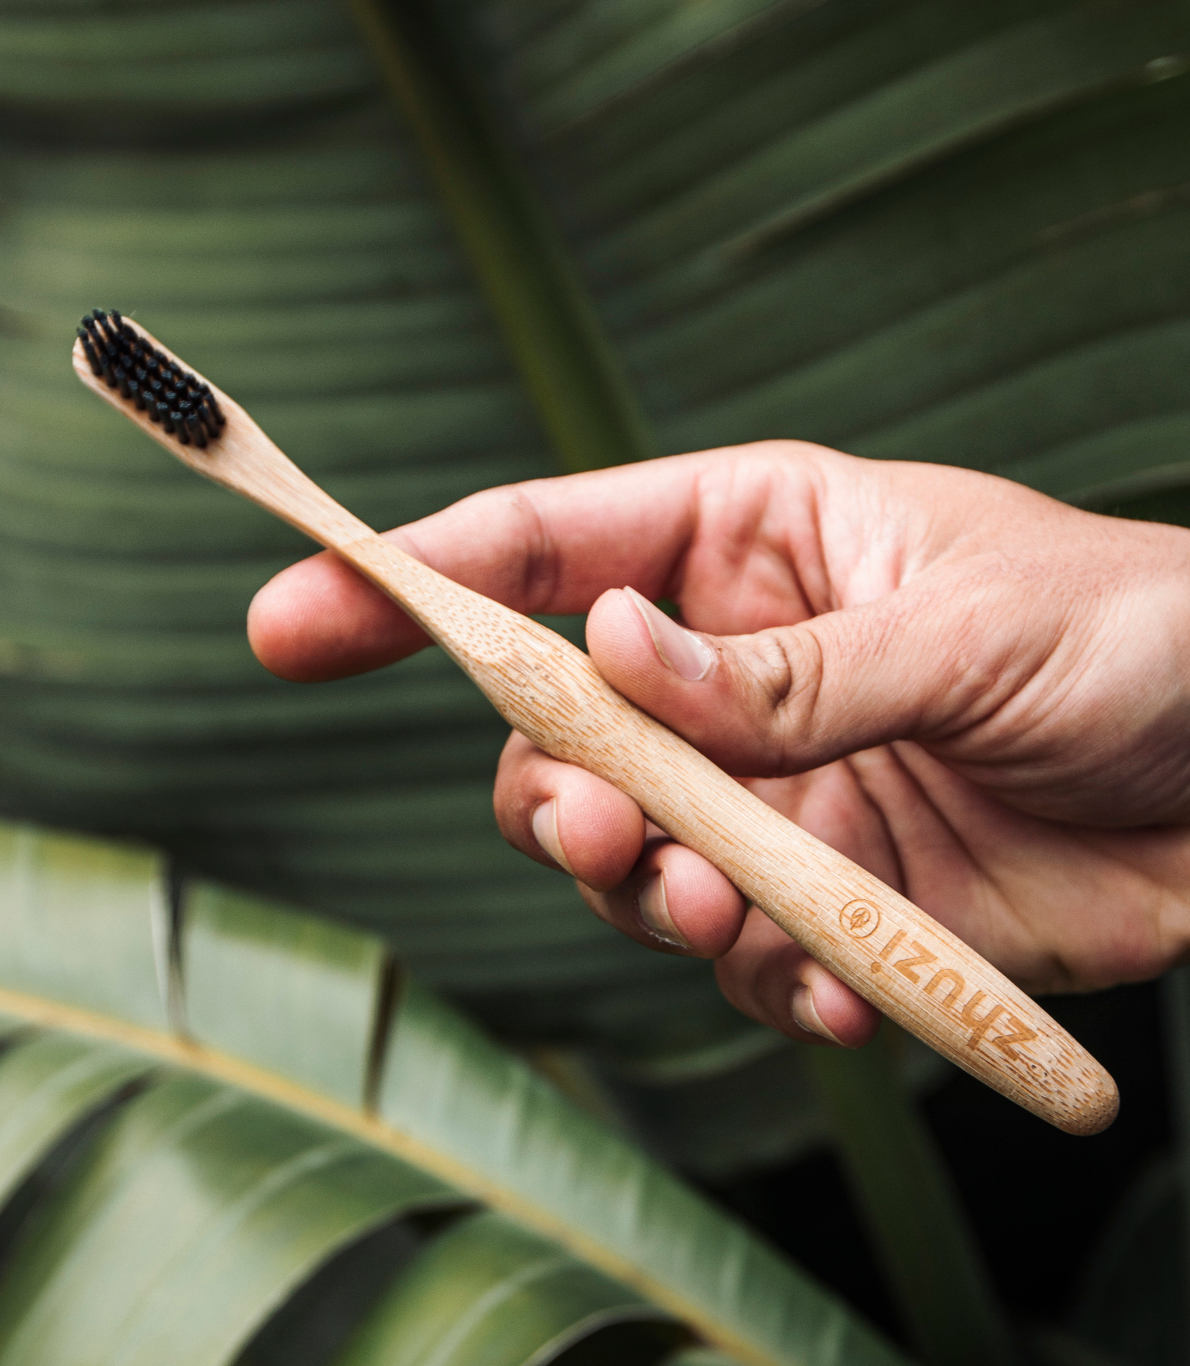 Na imagem observamos ao fundo umas folhas verdes grandes, e uma mão que agarra uma escova de dentes de bambu com cerdas pretas.